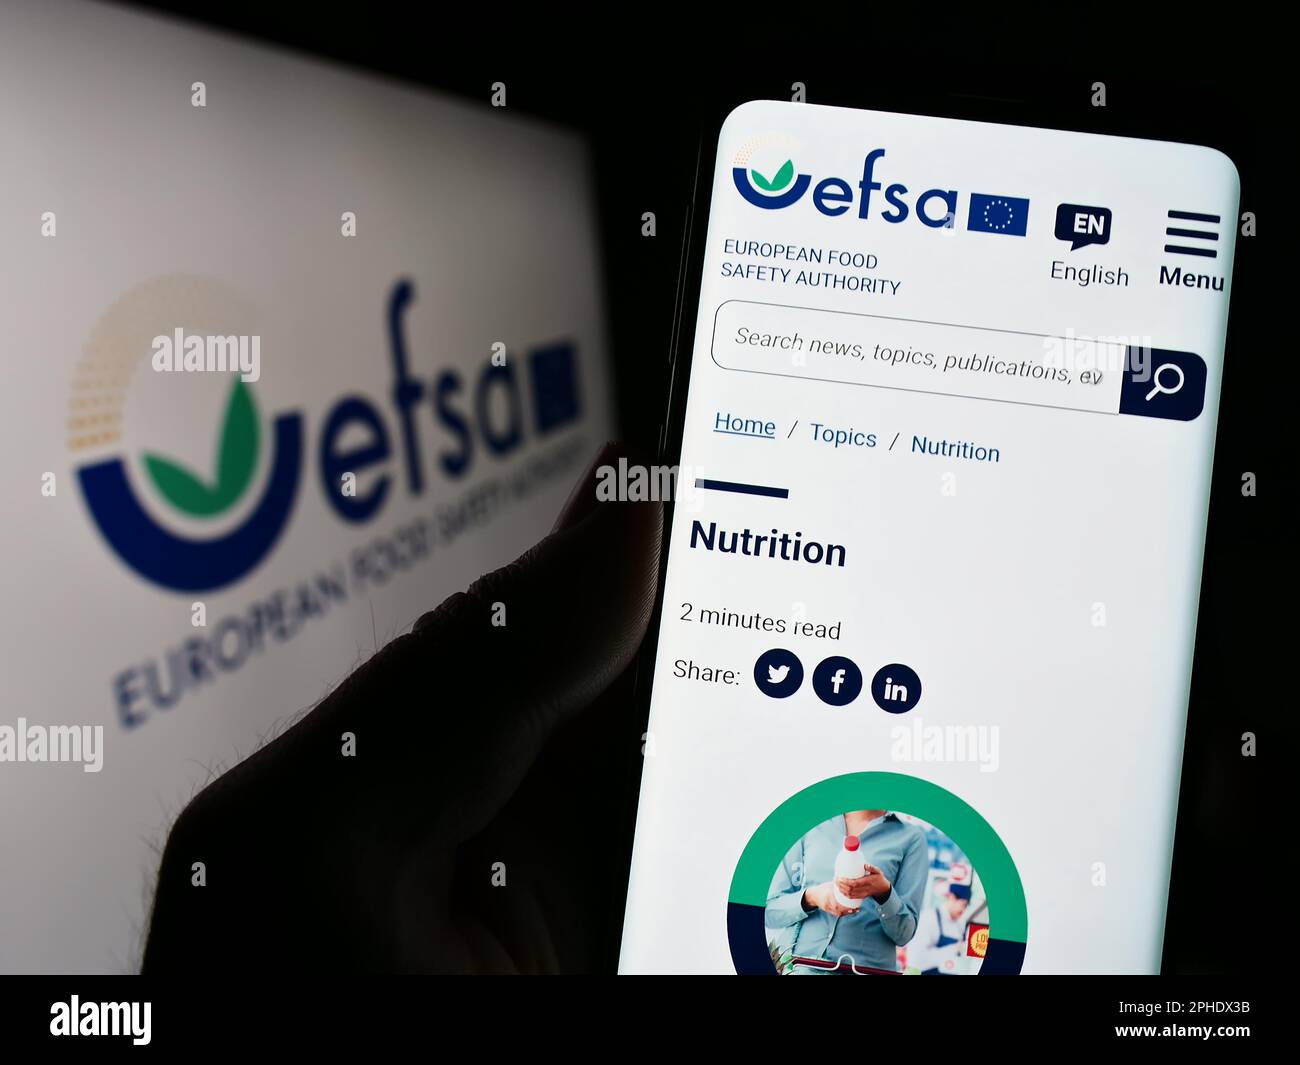 Persona che tiene il cellulare con la pagina web dell'Agenzia europea per la sicurezza alimentare (EFSA) sullo schermo con il logo. Messa a fuoco al centro del display del telefono. Foto Stock